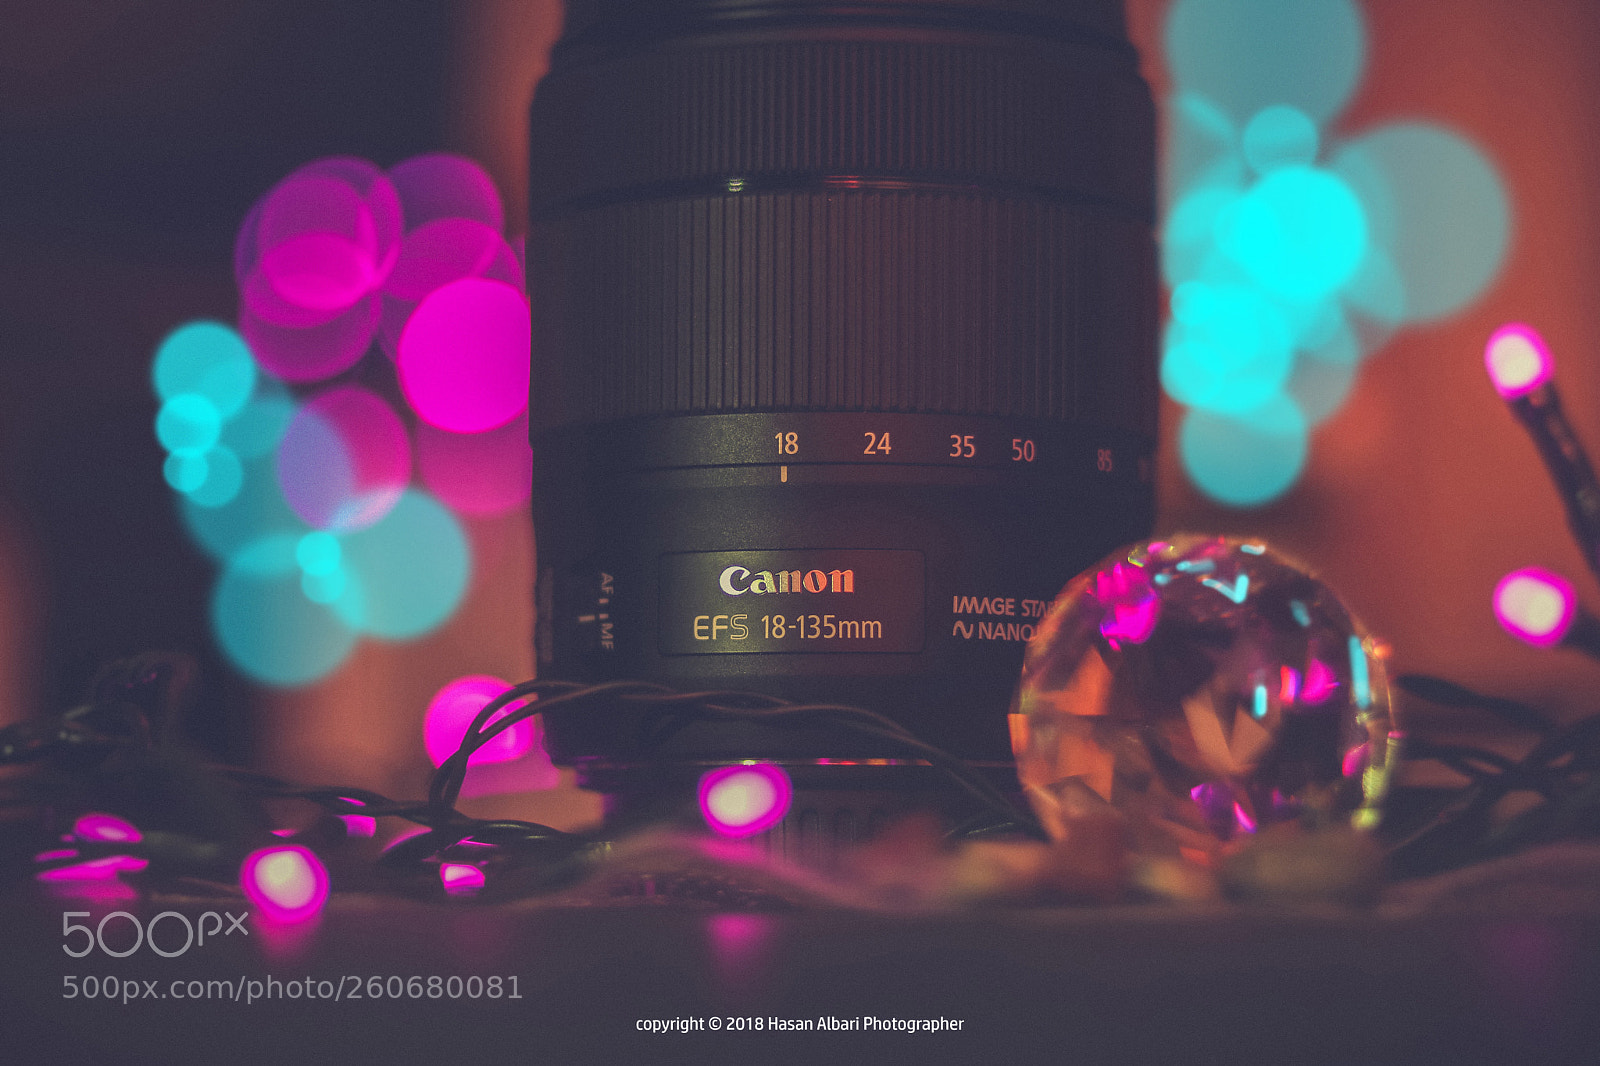 Canon EOS 80D sample photo. Canon lens 18-135mm photography